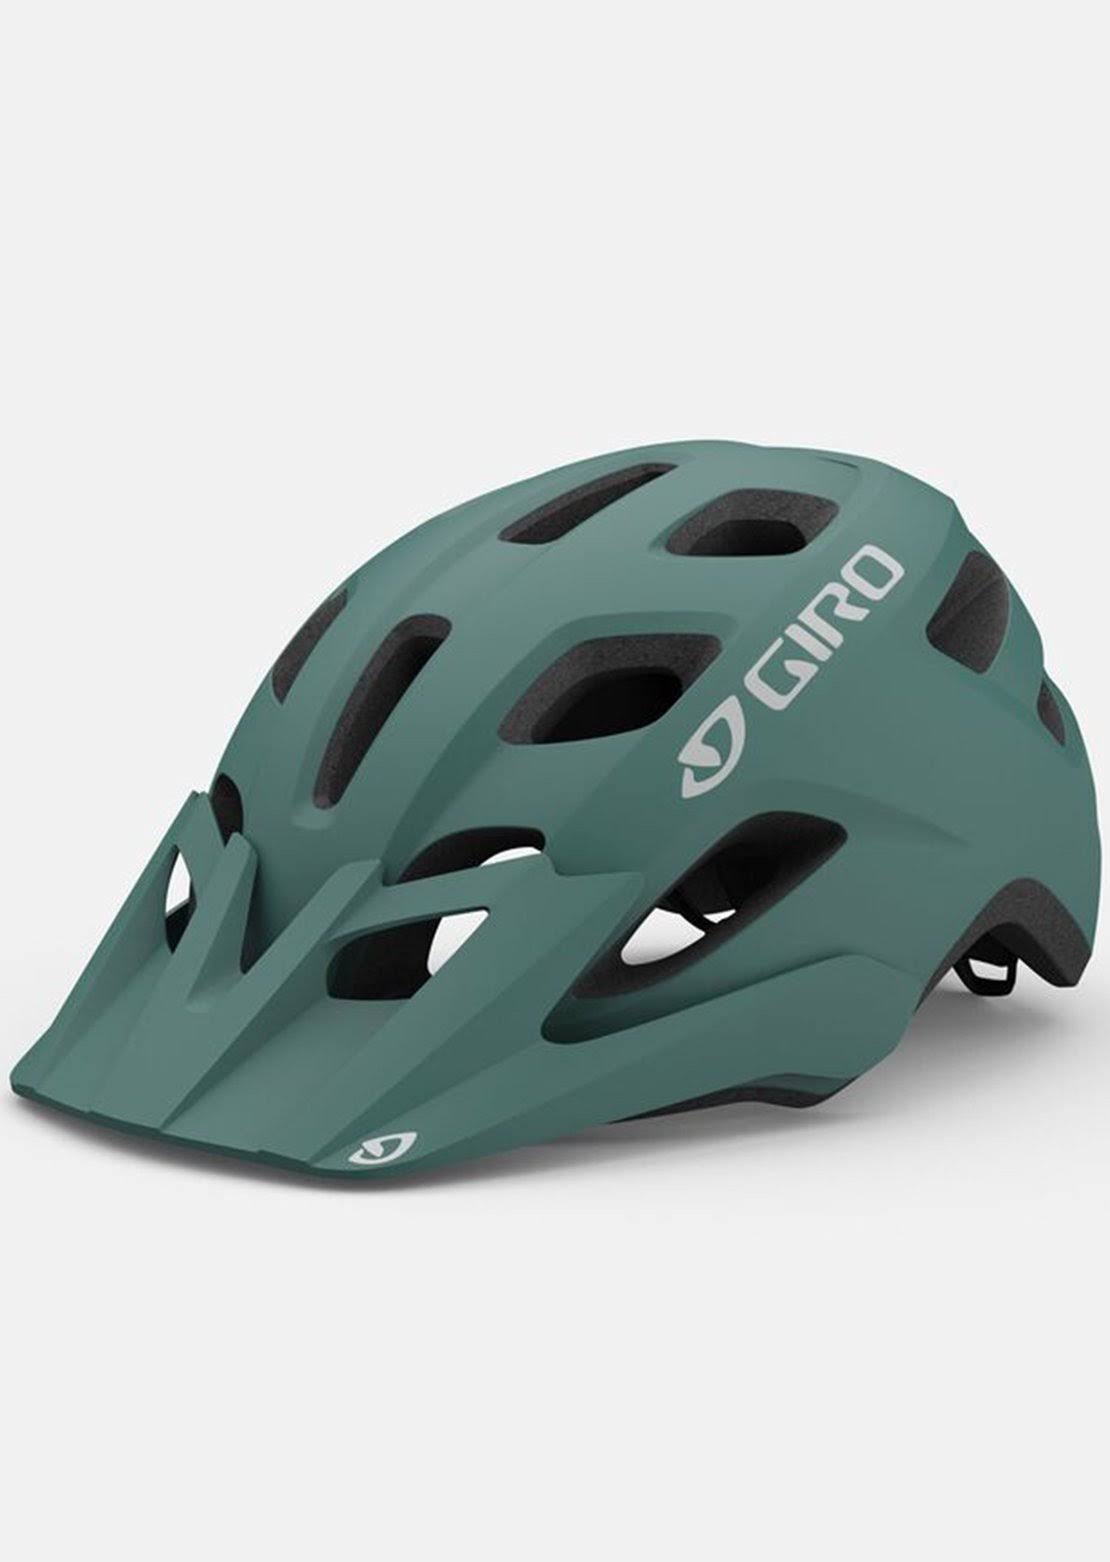 Giro Women's Verce MIPS Mountain Bike Helmet